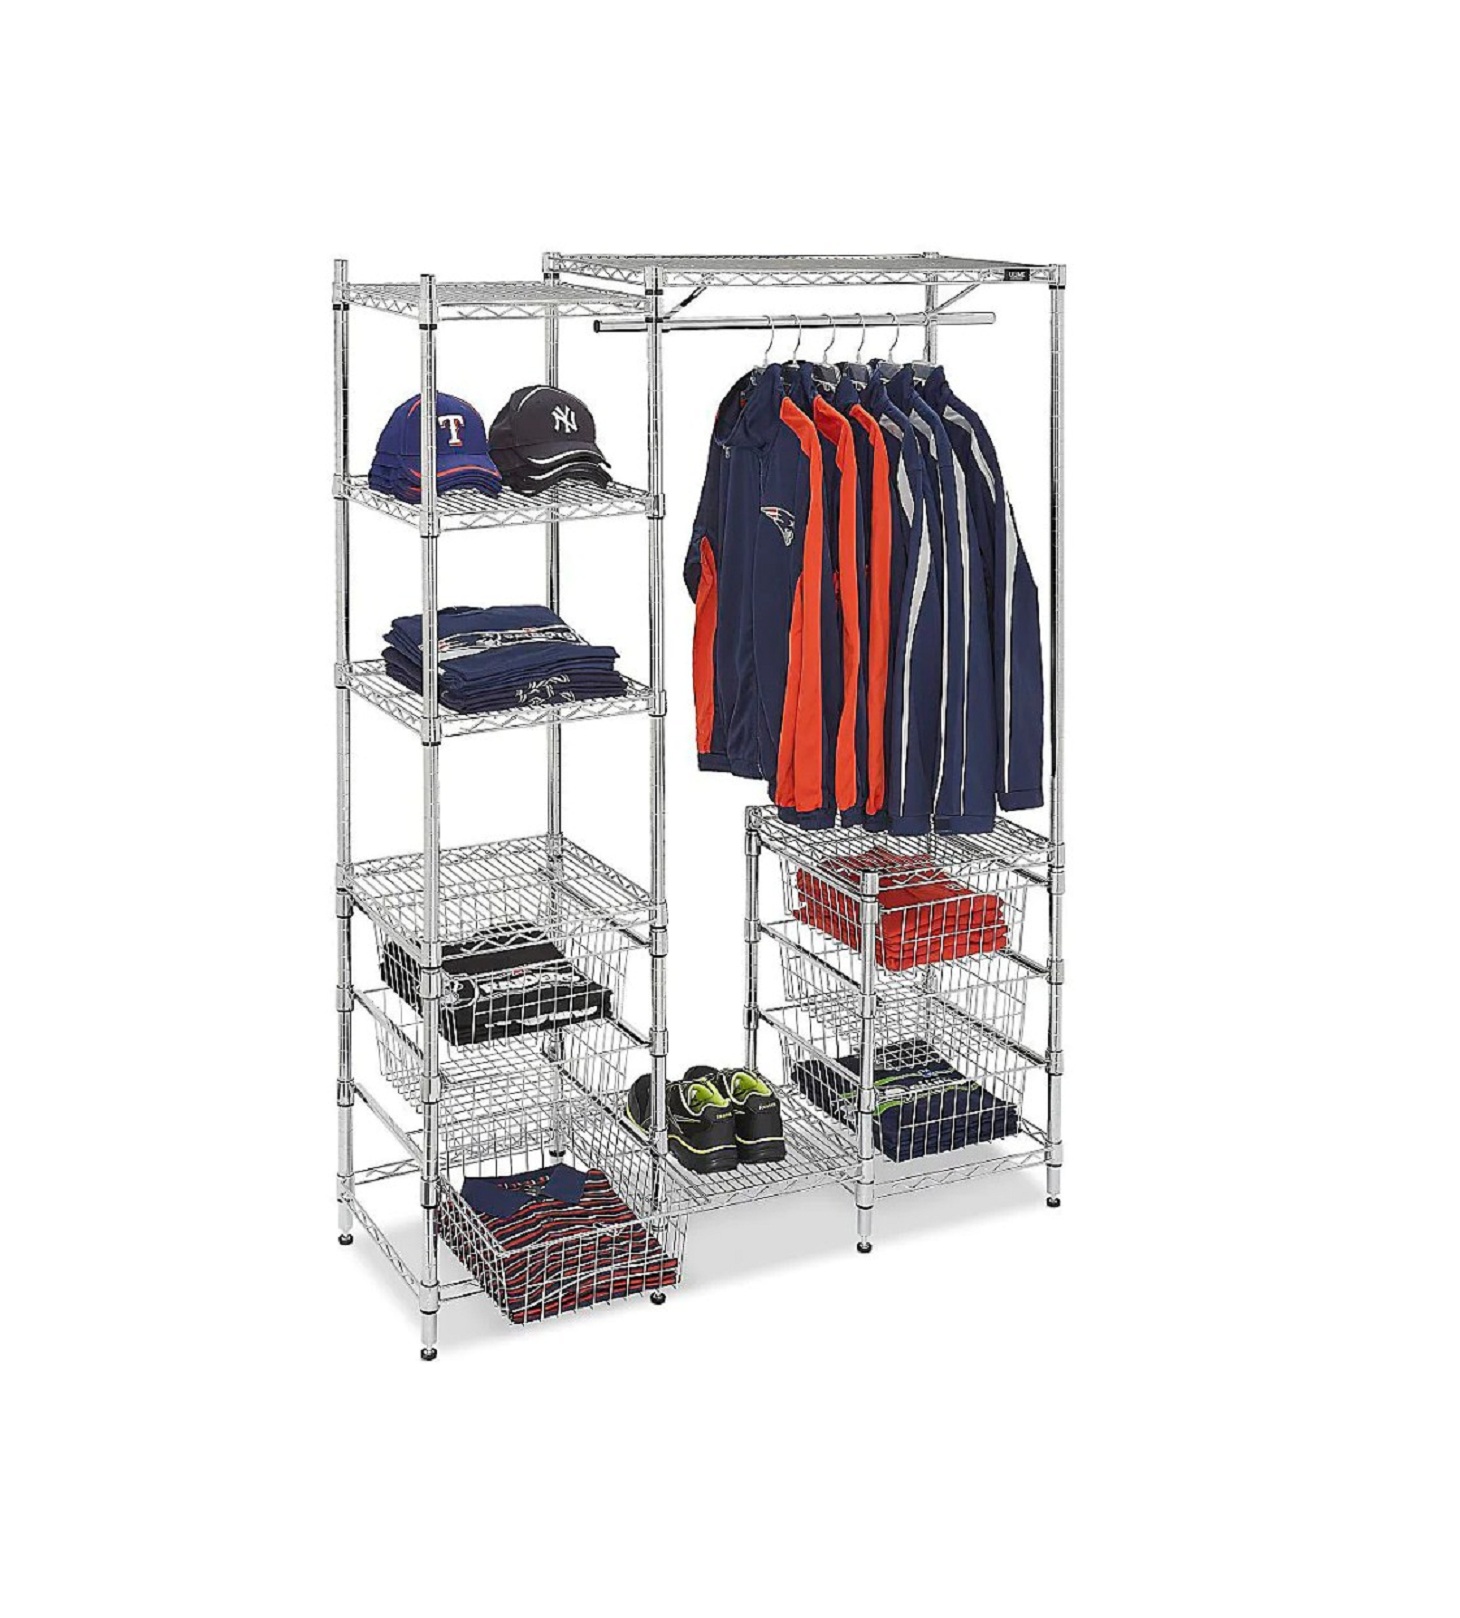 ULINE H-2450 Garment Storage Center With Baskets Installation Guide